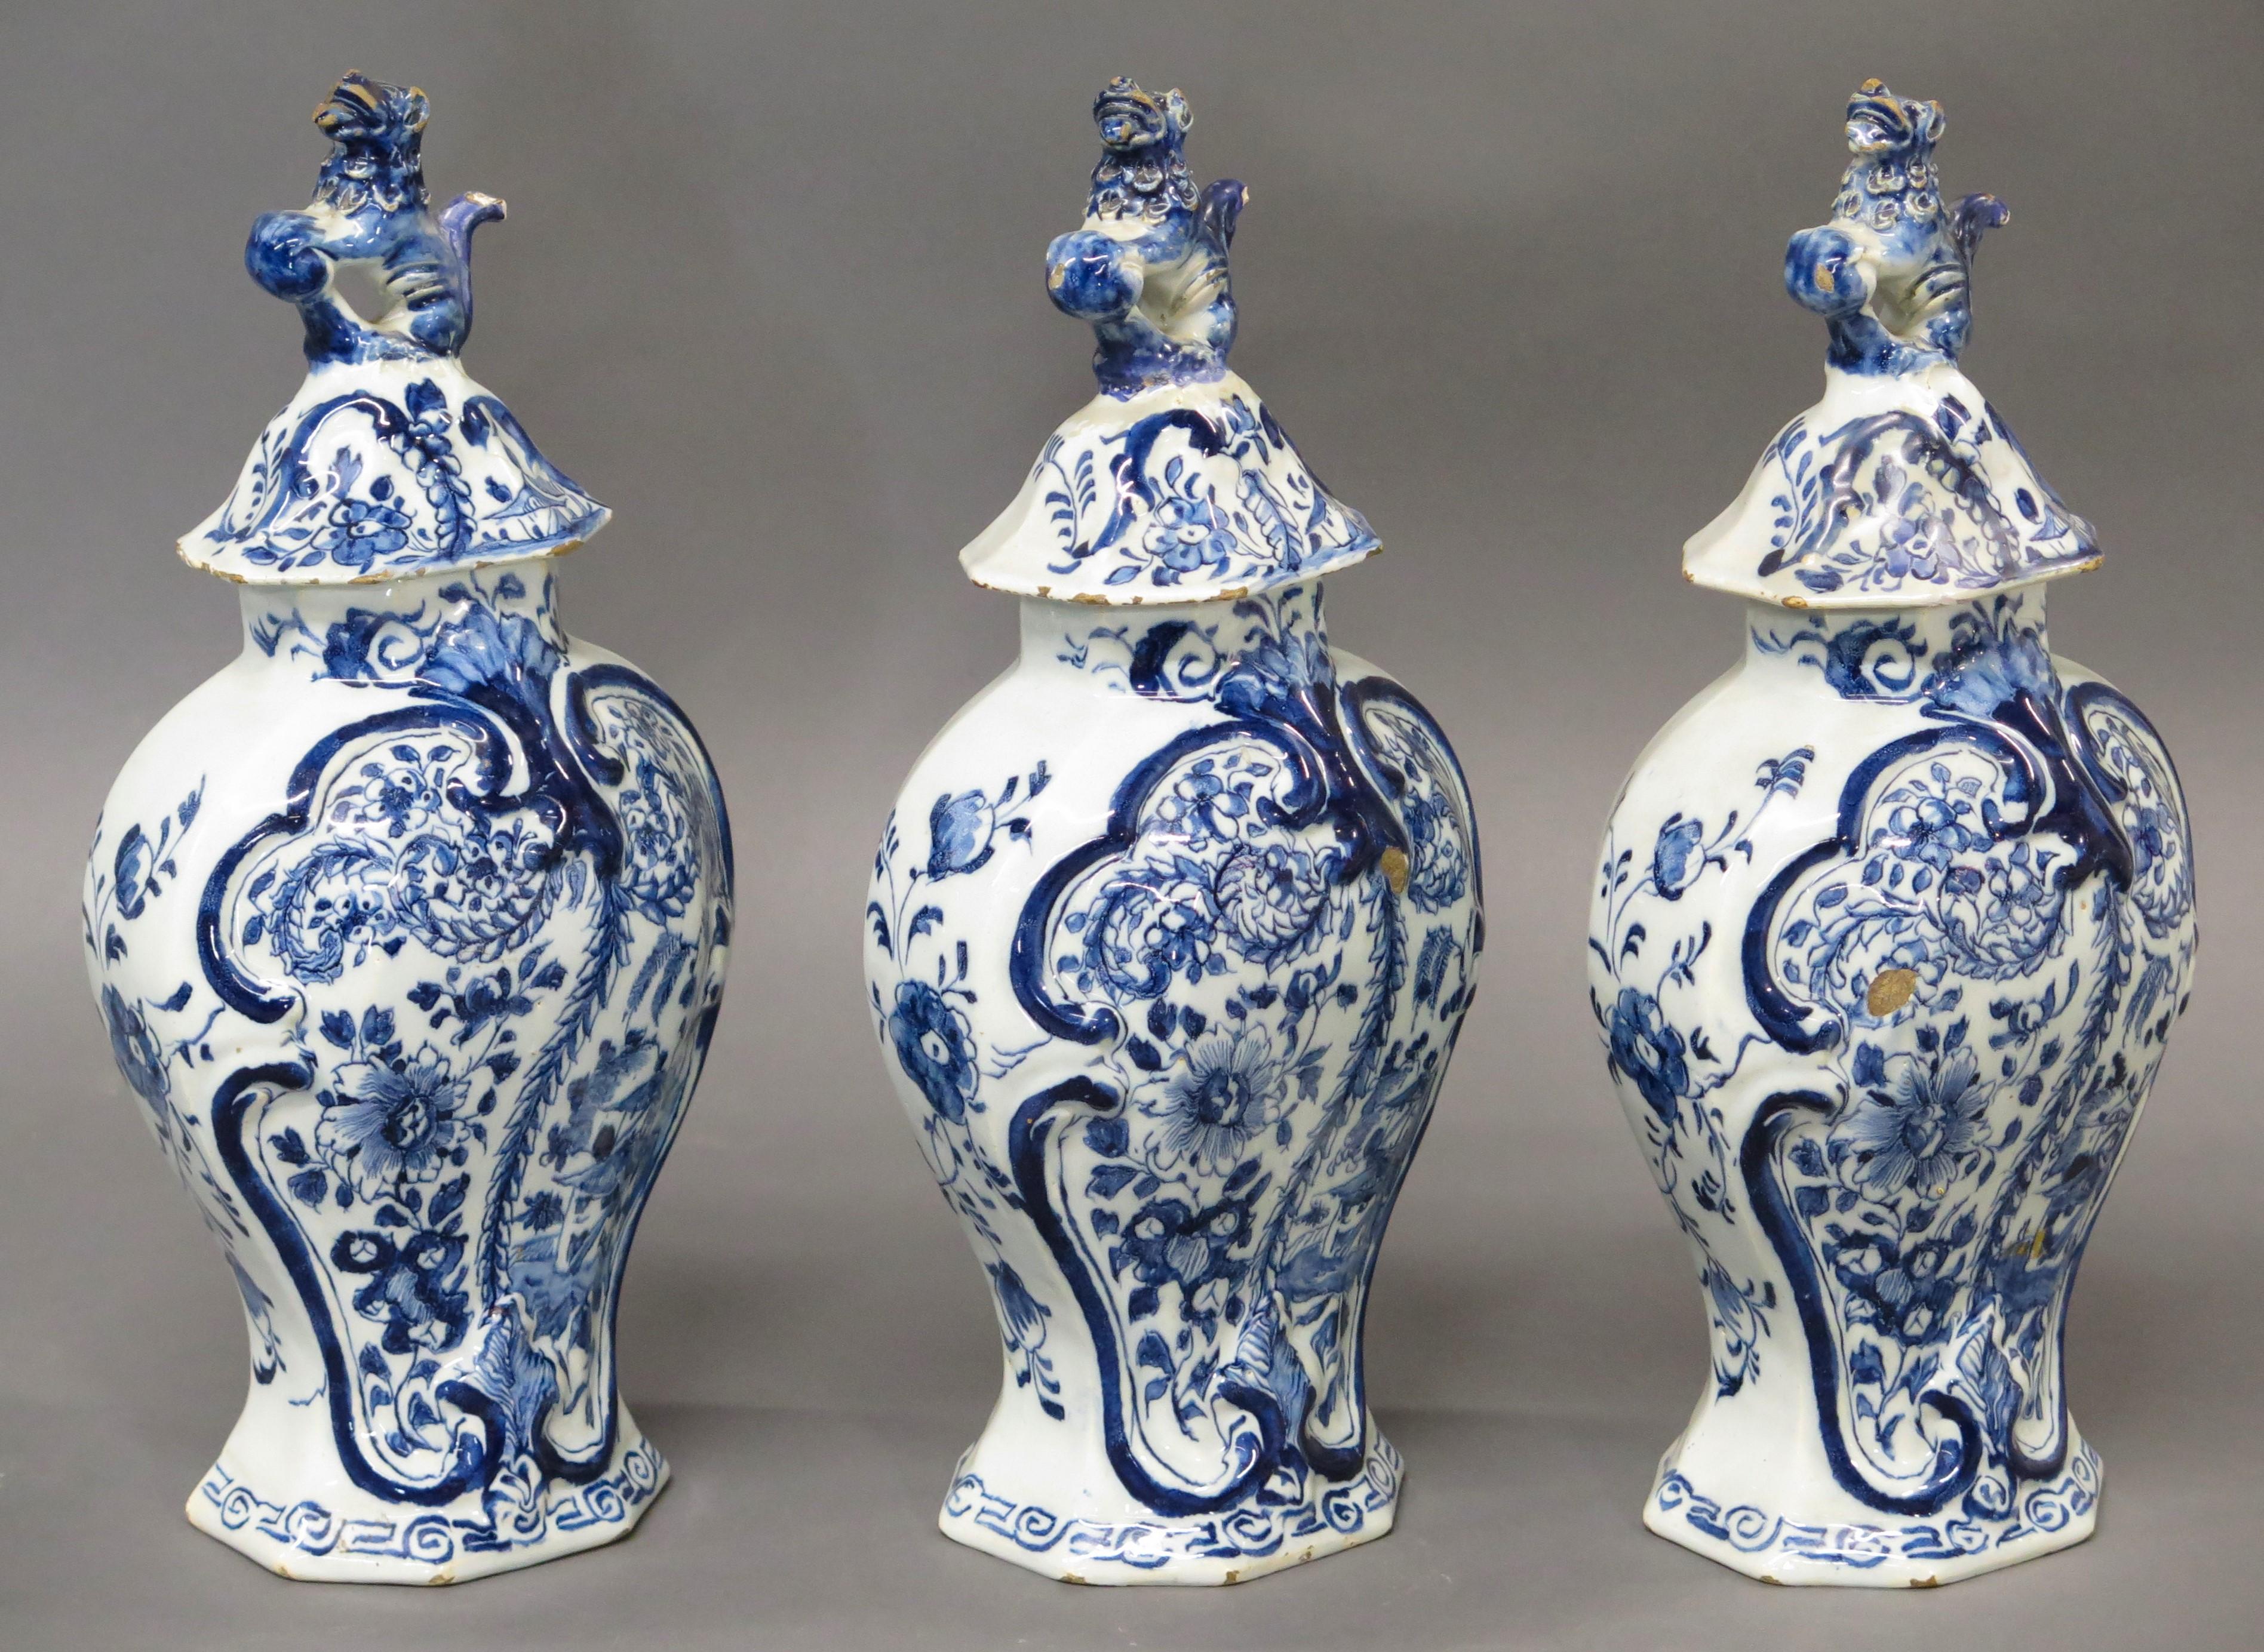 Ensemble de 3 vases à couvercle garni en Delft hollandais du 18e siècle, bleu et blanc avec des panneaux floraux et des décorations de feuillage en relief, avec des embouts en forme de chien de chasse, chaque vase étant marqué LPK sur la base pour